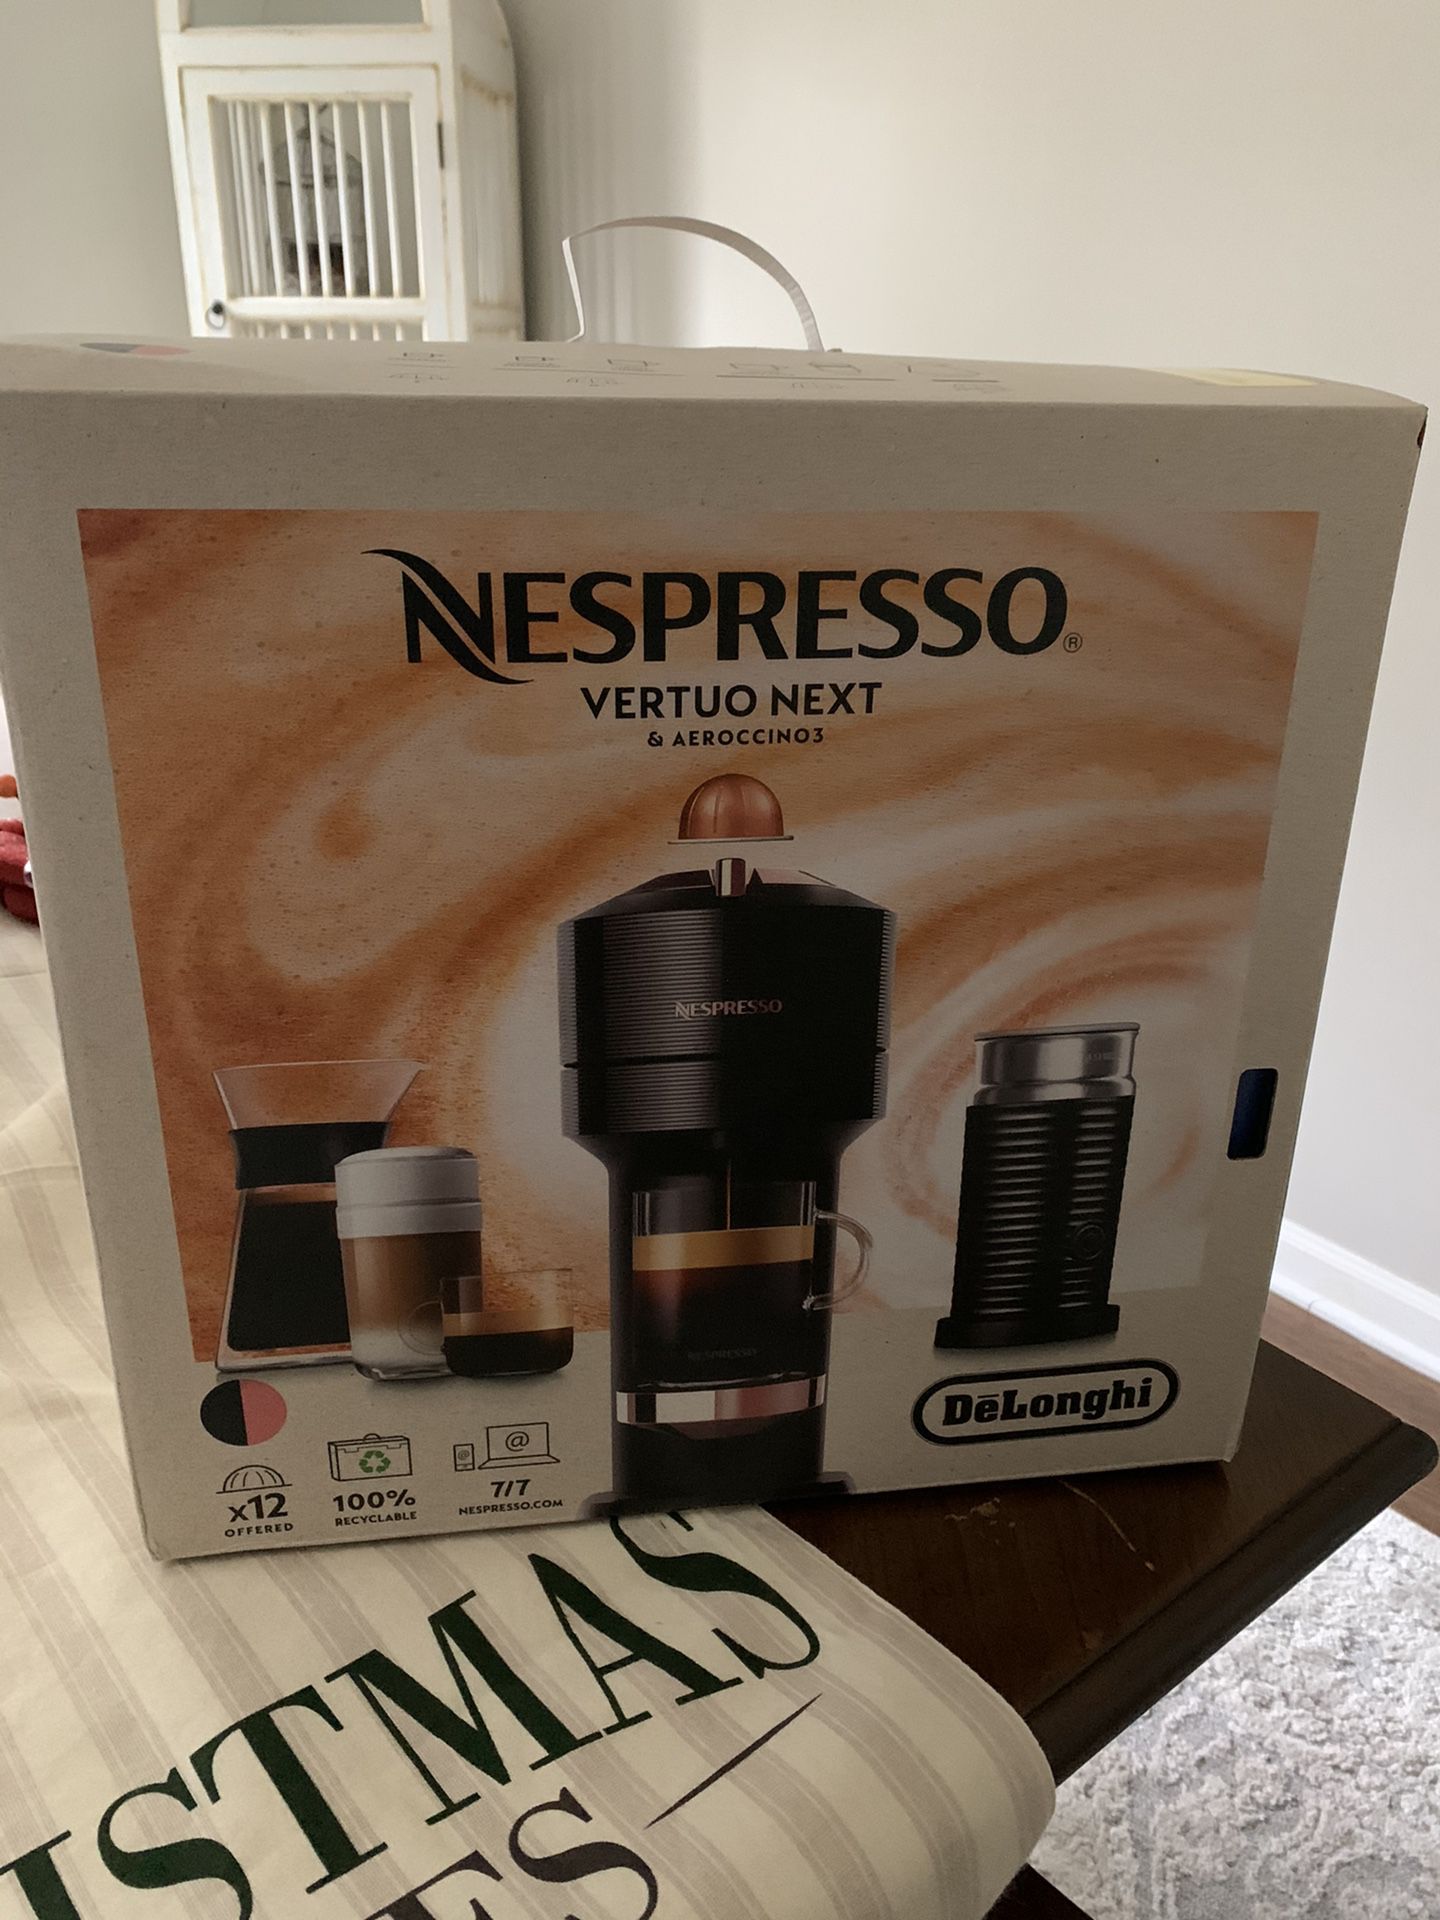 Nespresso Vertuo Next & Aerroccino3 Coffee Maker (Brand New)